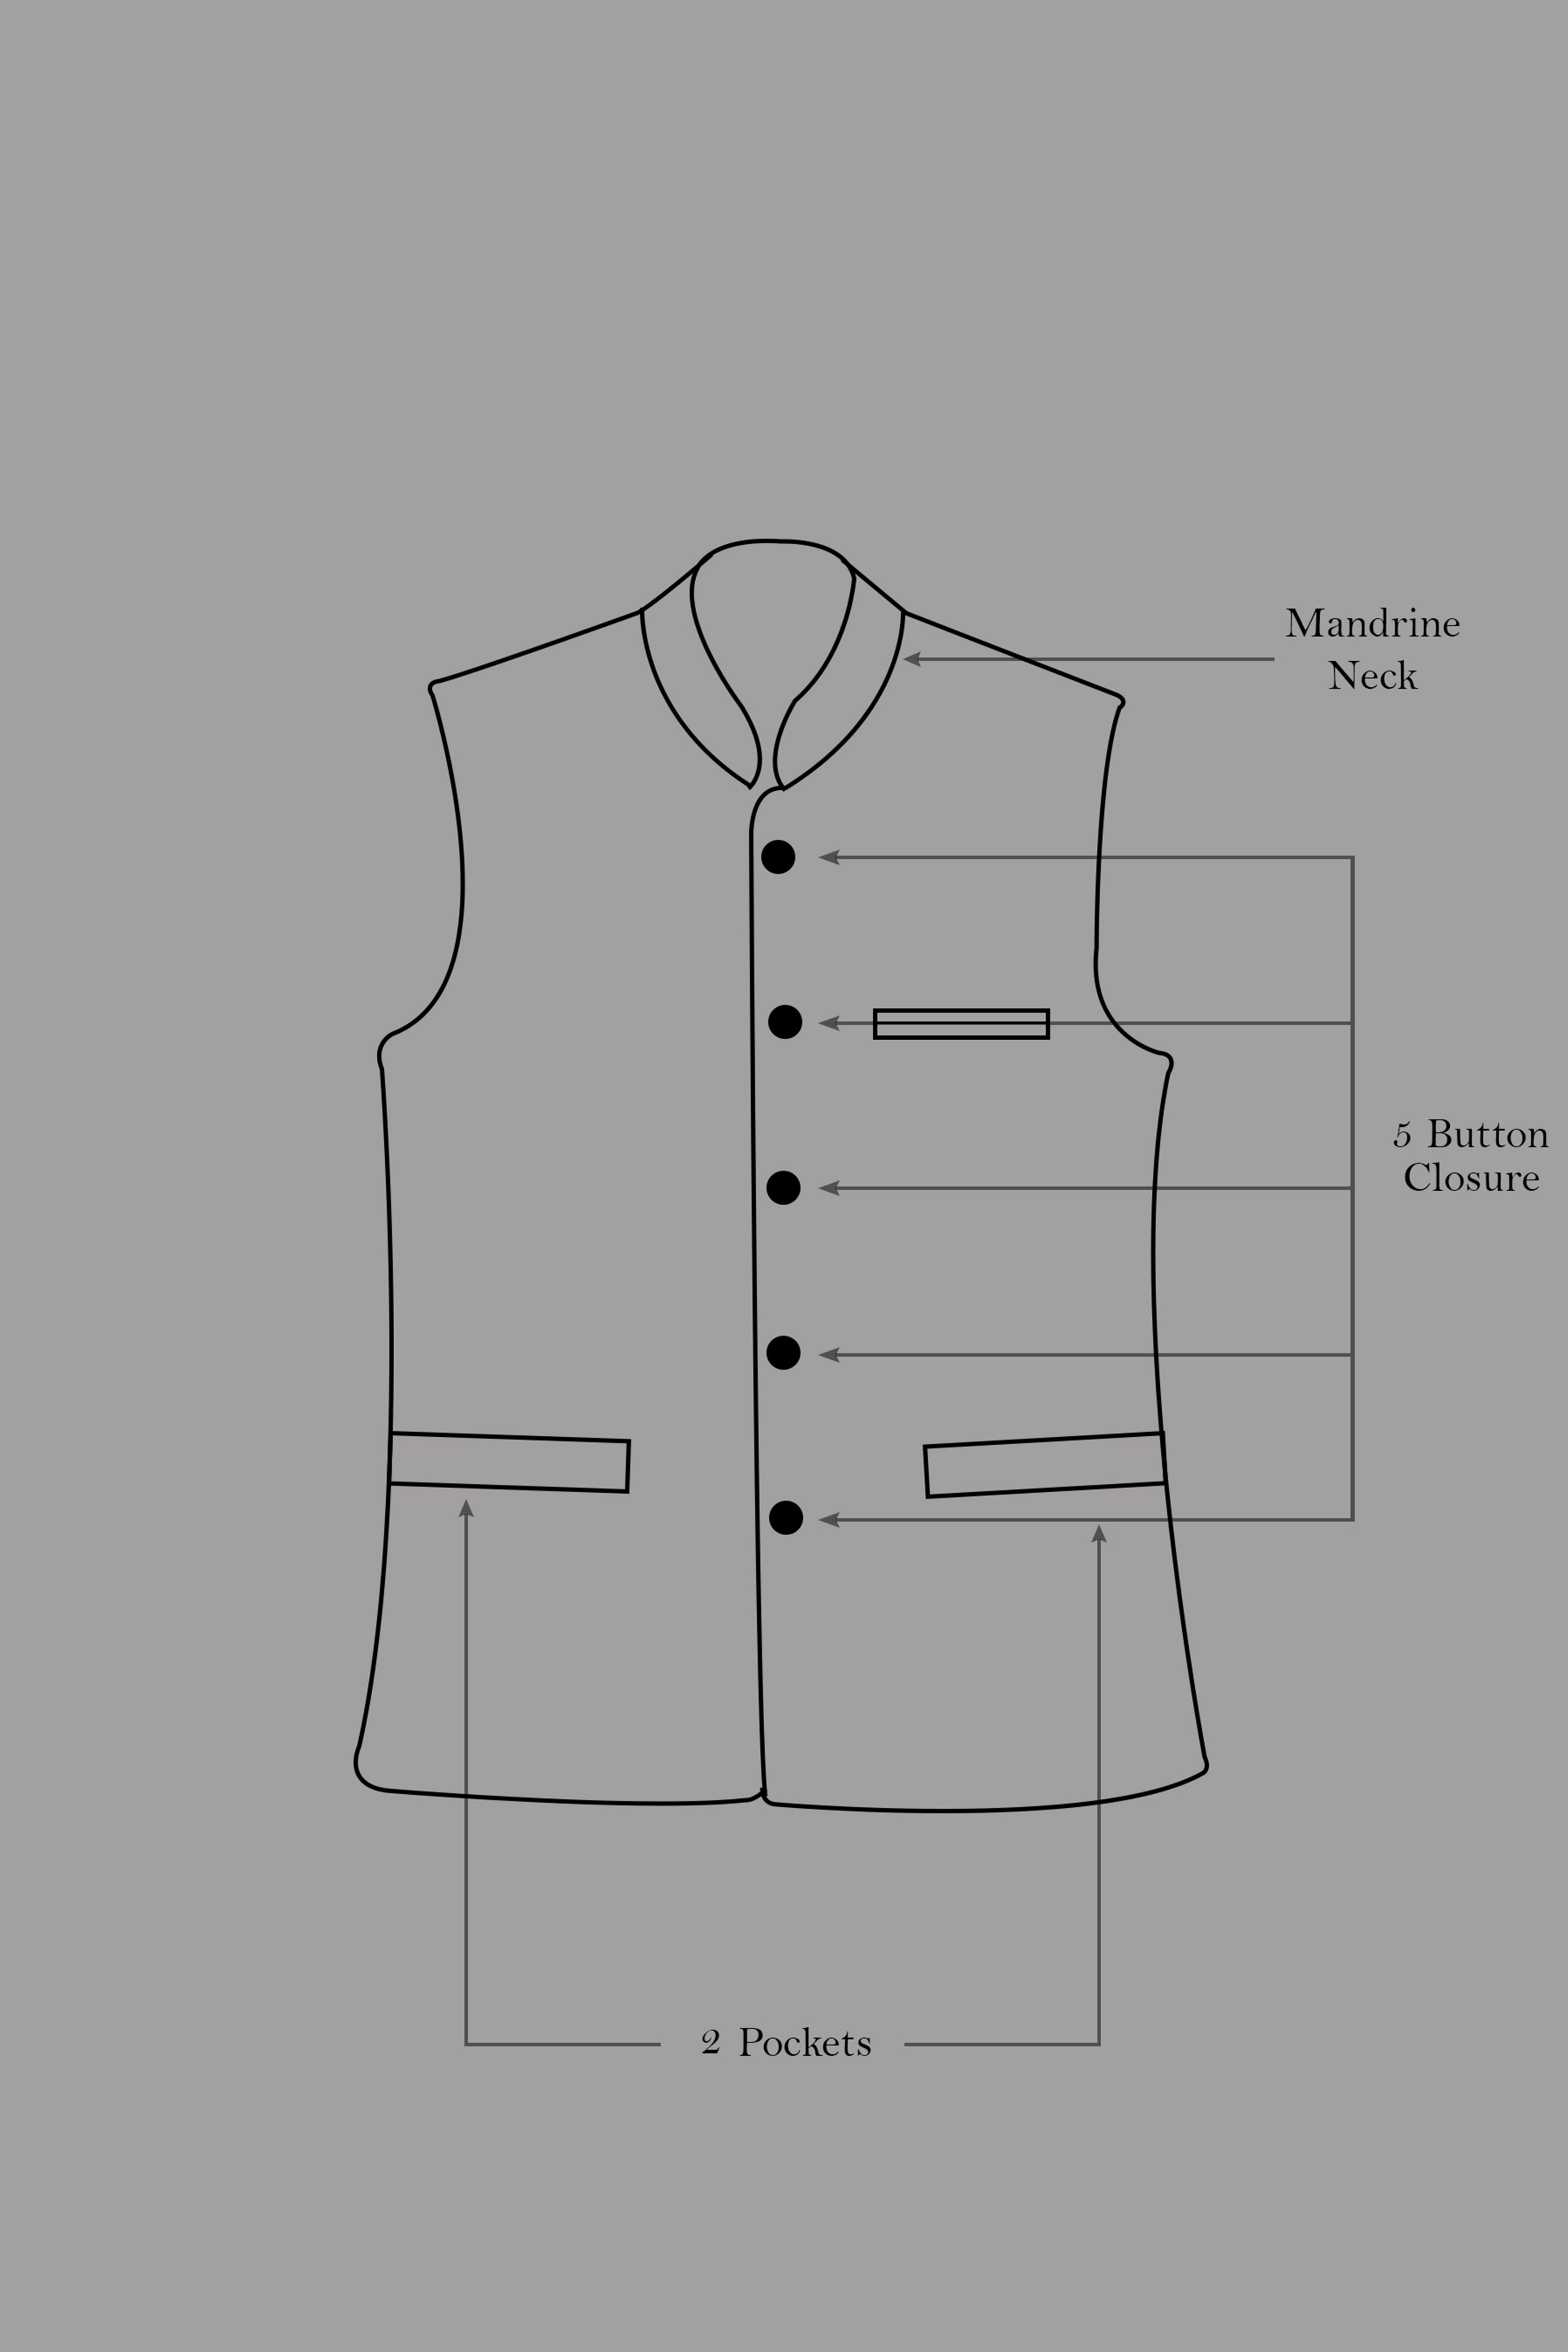 Chalice Brown Trellis Pattern Thread and Sequin Embroidered Designer Viscose Nehru Jacket